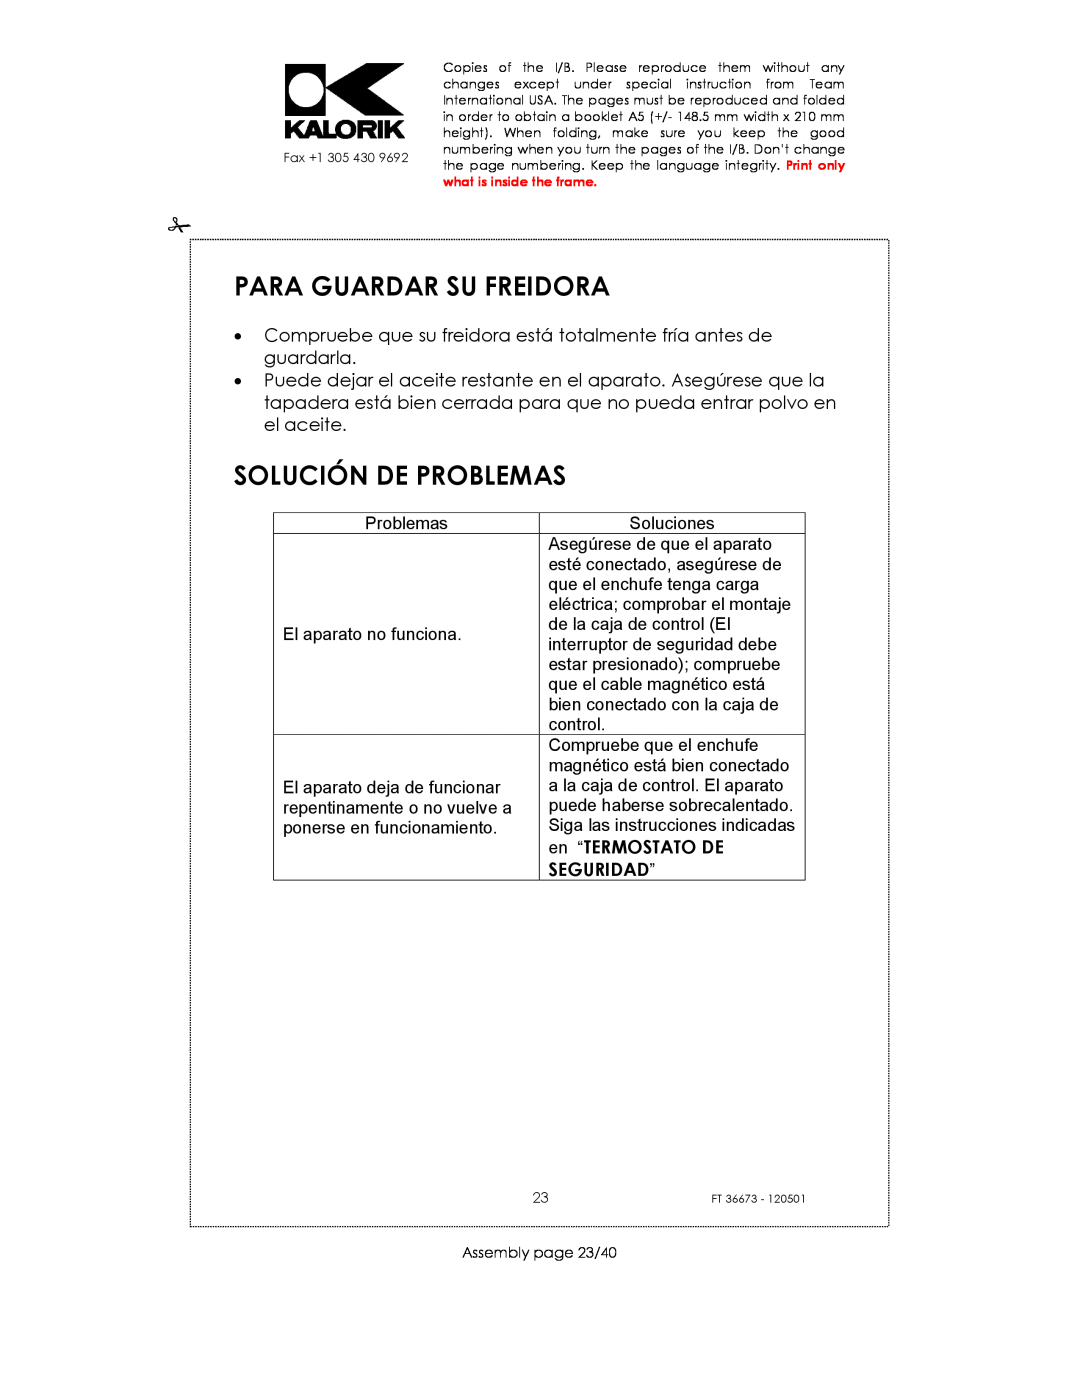 Kalorik USK FT 36673 manual Para Guardar Su Freidora, Solución De Problemas, en “TERMOSTATO DE, Seguridad” 